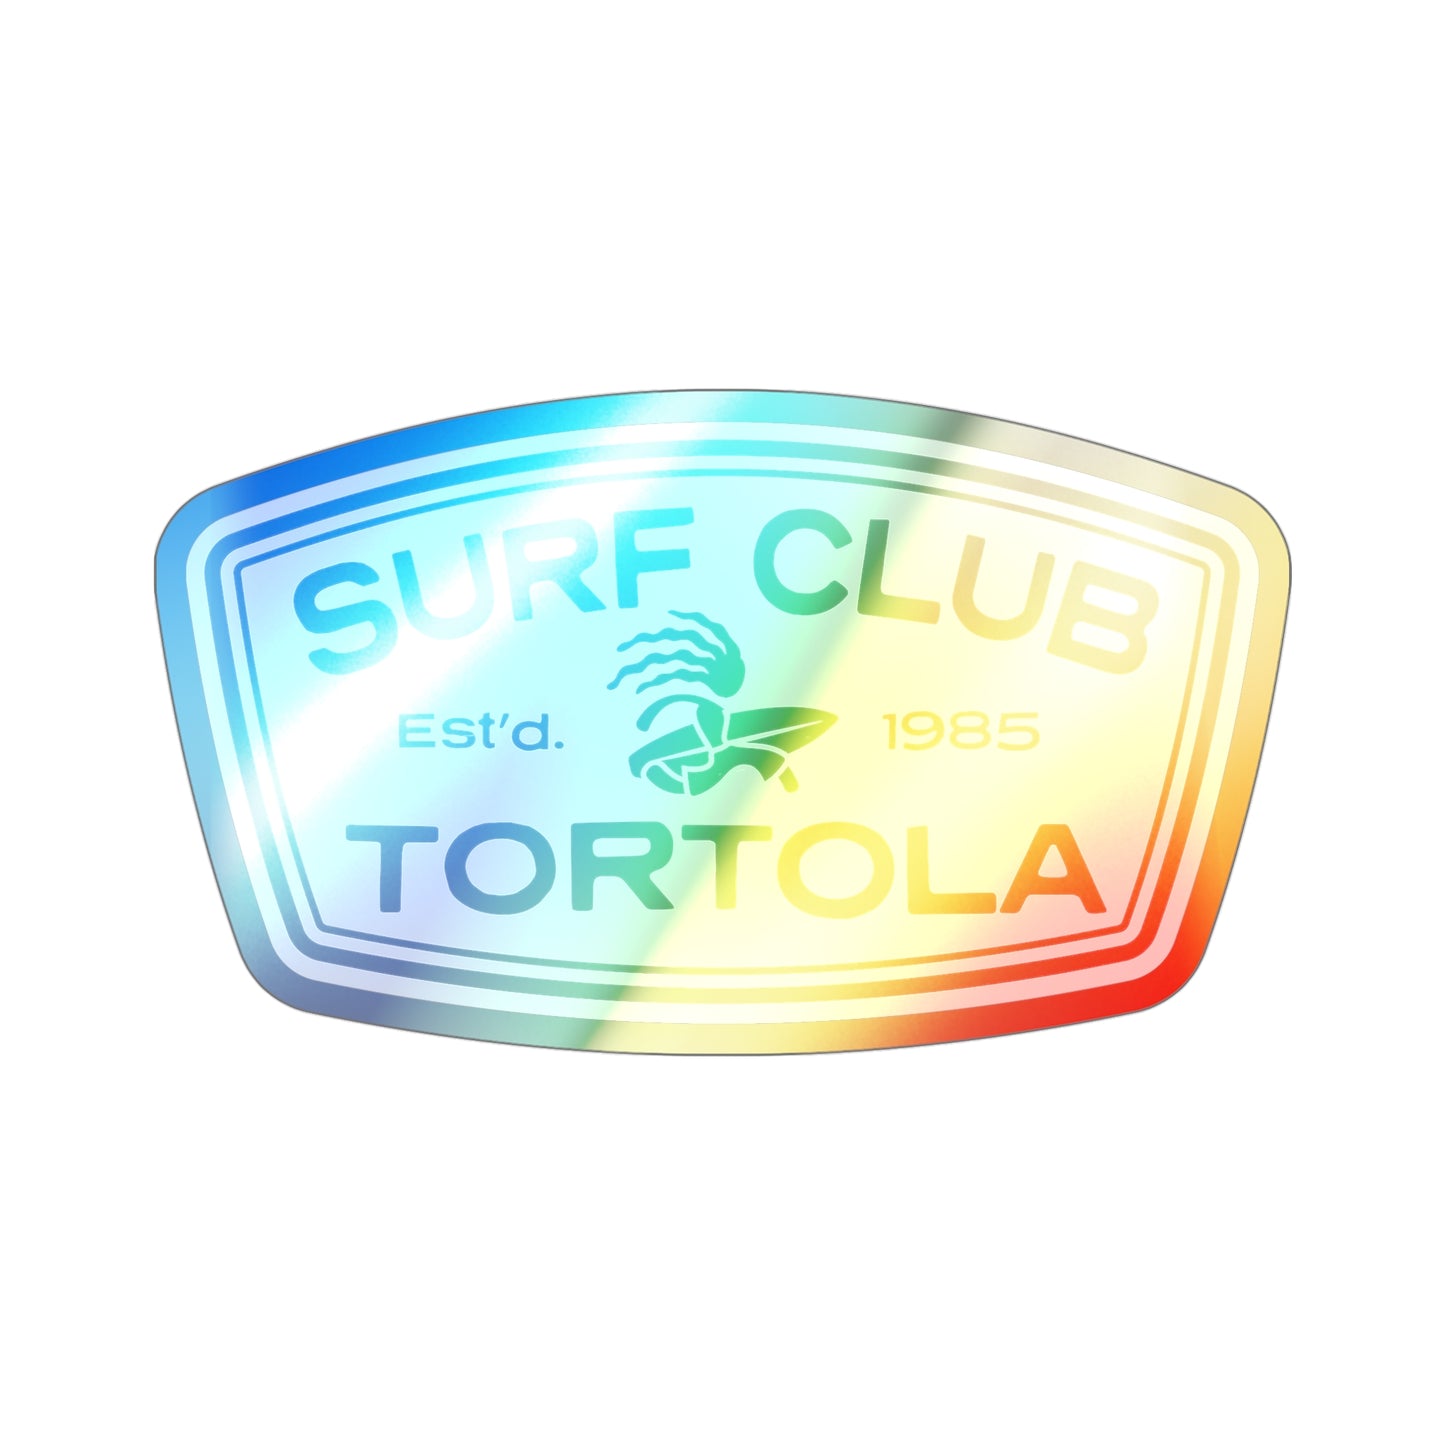 “Surf Club Tortola” Holographic Die-cut Sticker